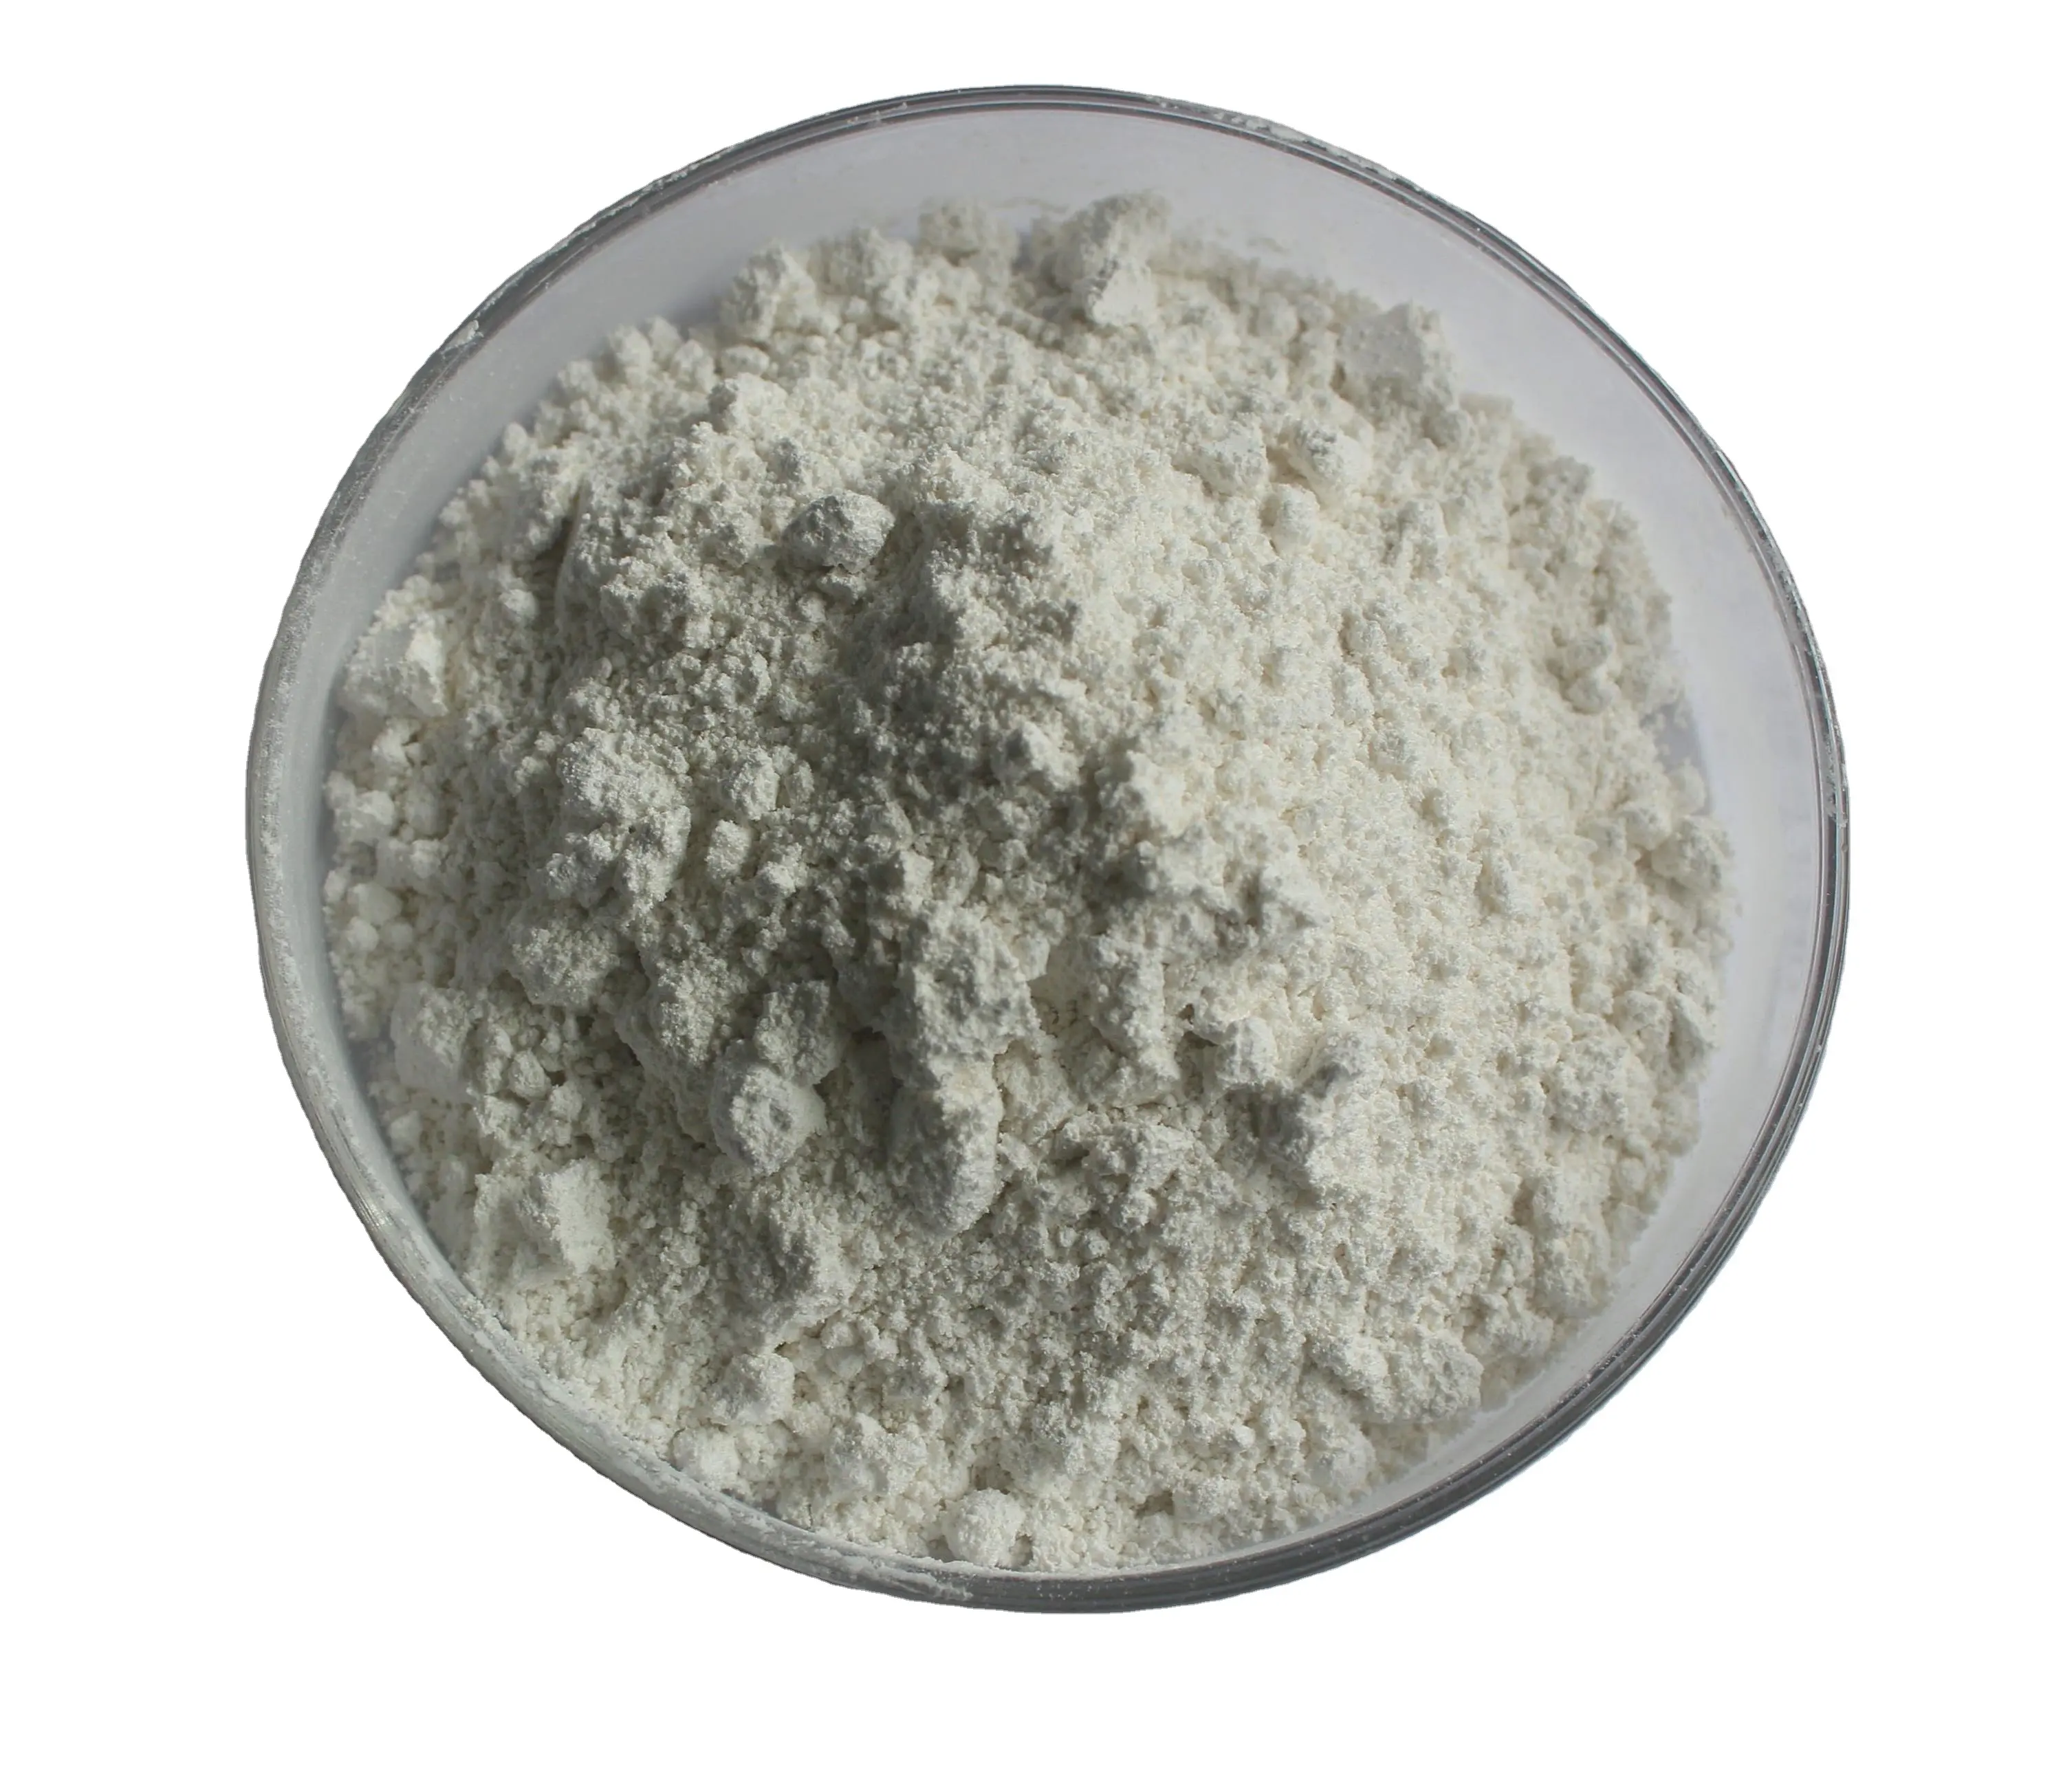 Tricalcium fosfat CAS 7758-87-4 aditif makanan kualitas makanan Tricalcium fosfat/kalsium fosfat tripasic